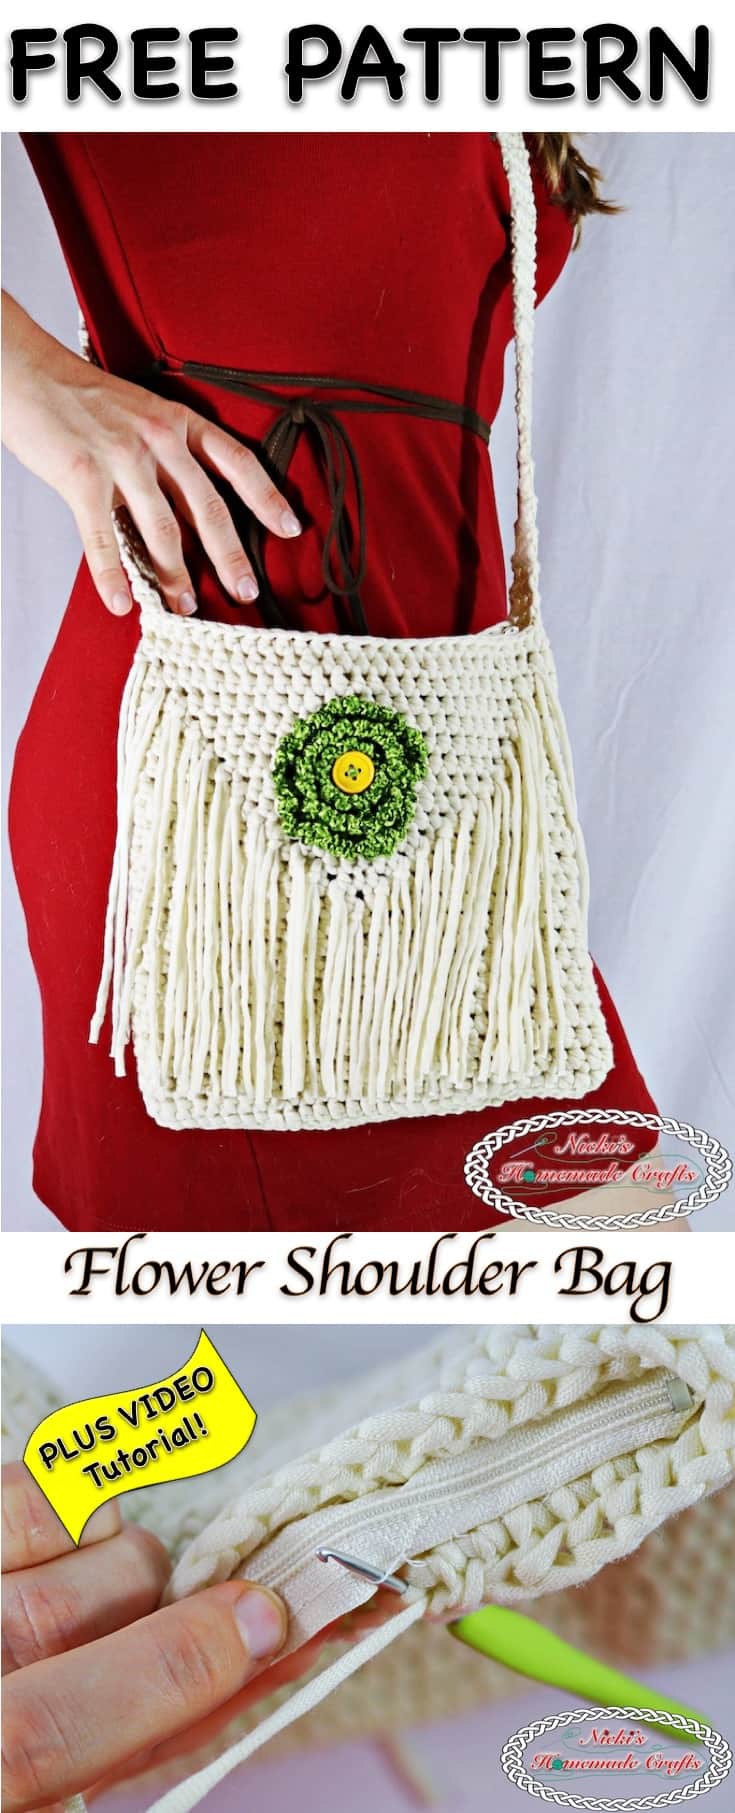 crochet flower handbag simple crochet handbag pattern - YouTube